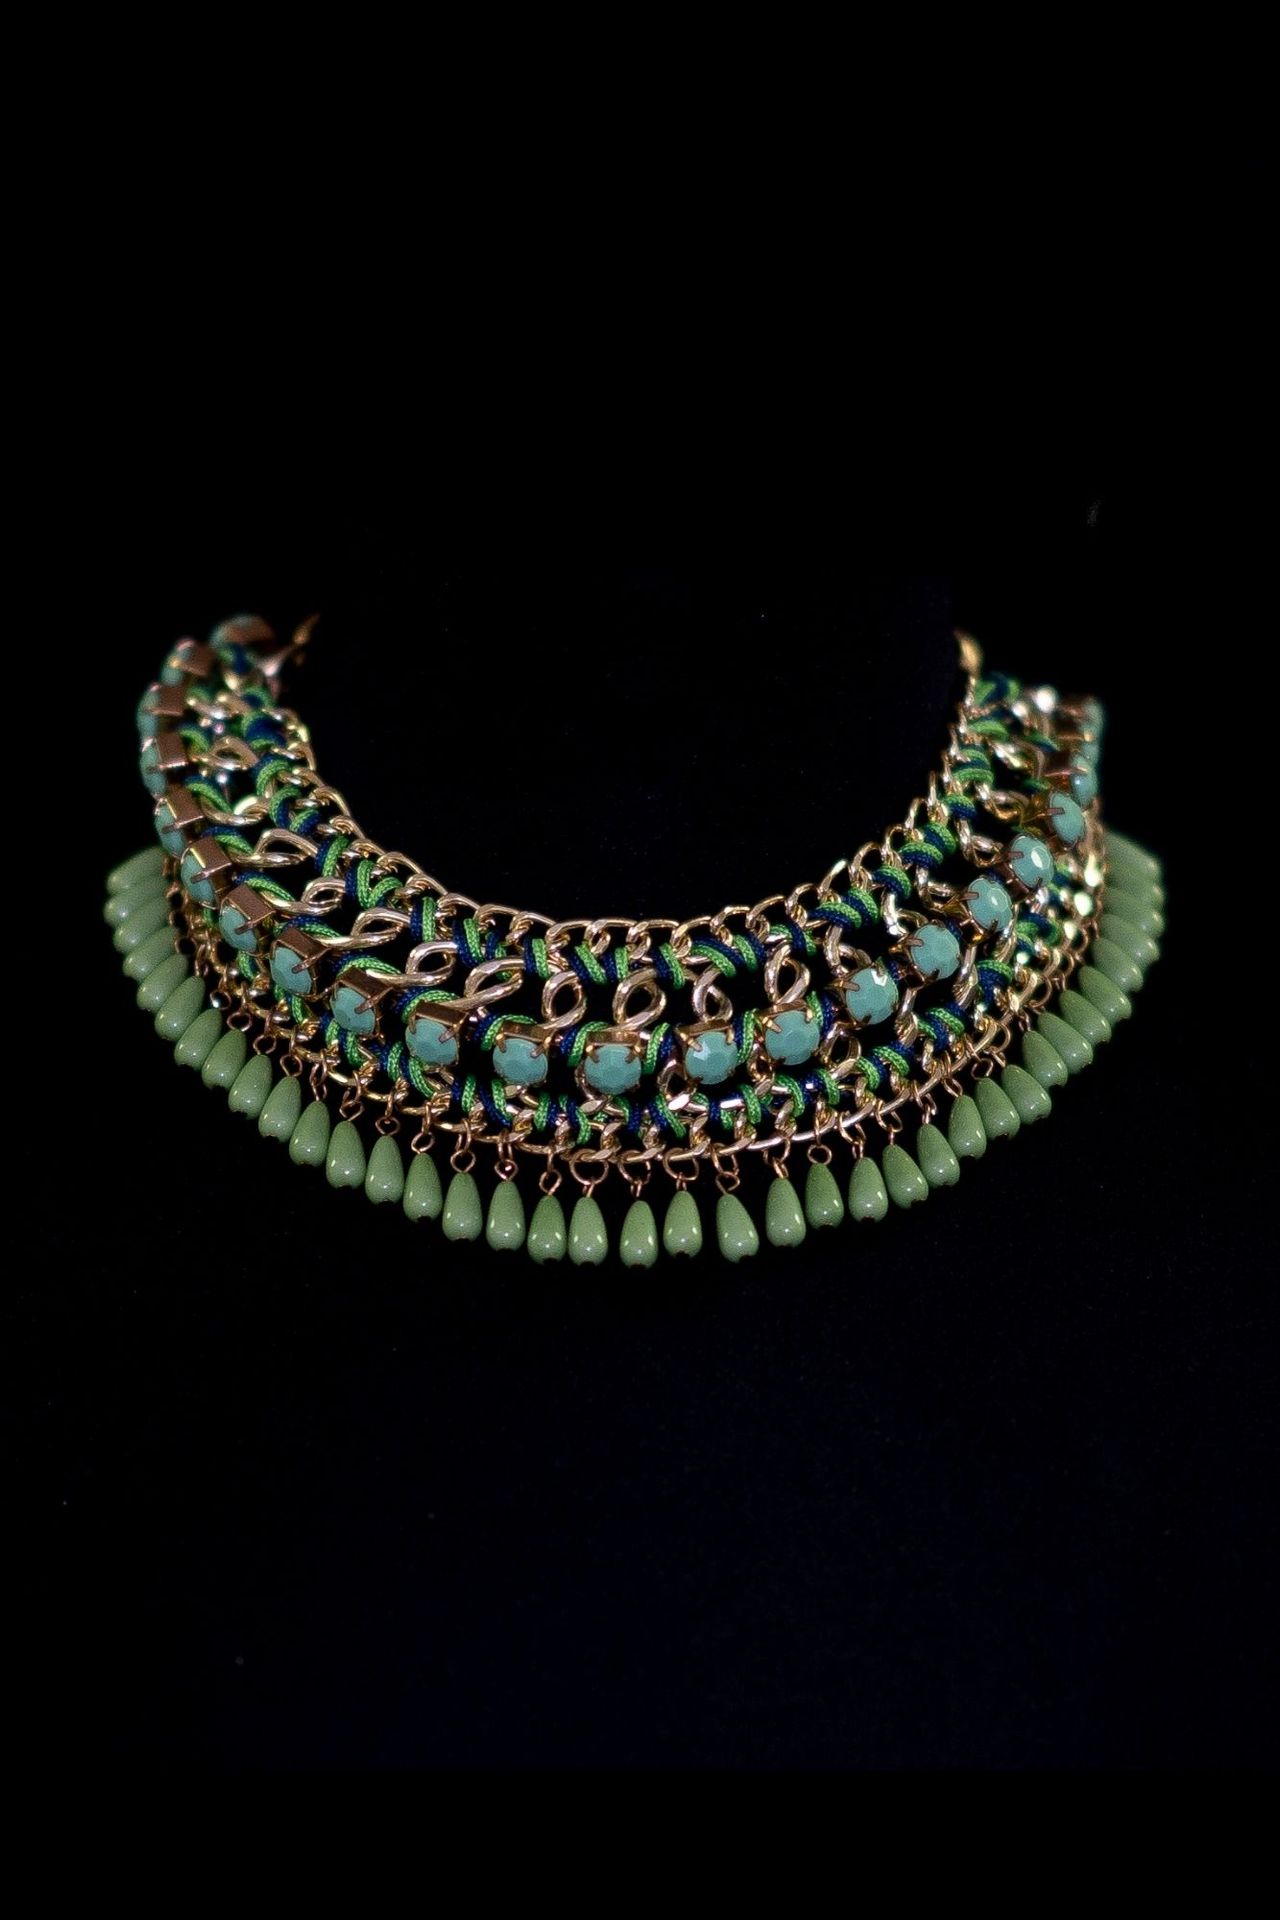 Collier antique Collana realizzata con intrecci di perle turchesi.